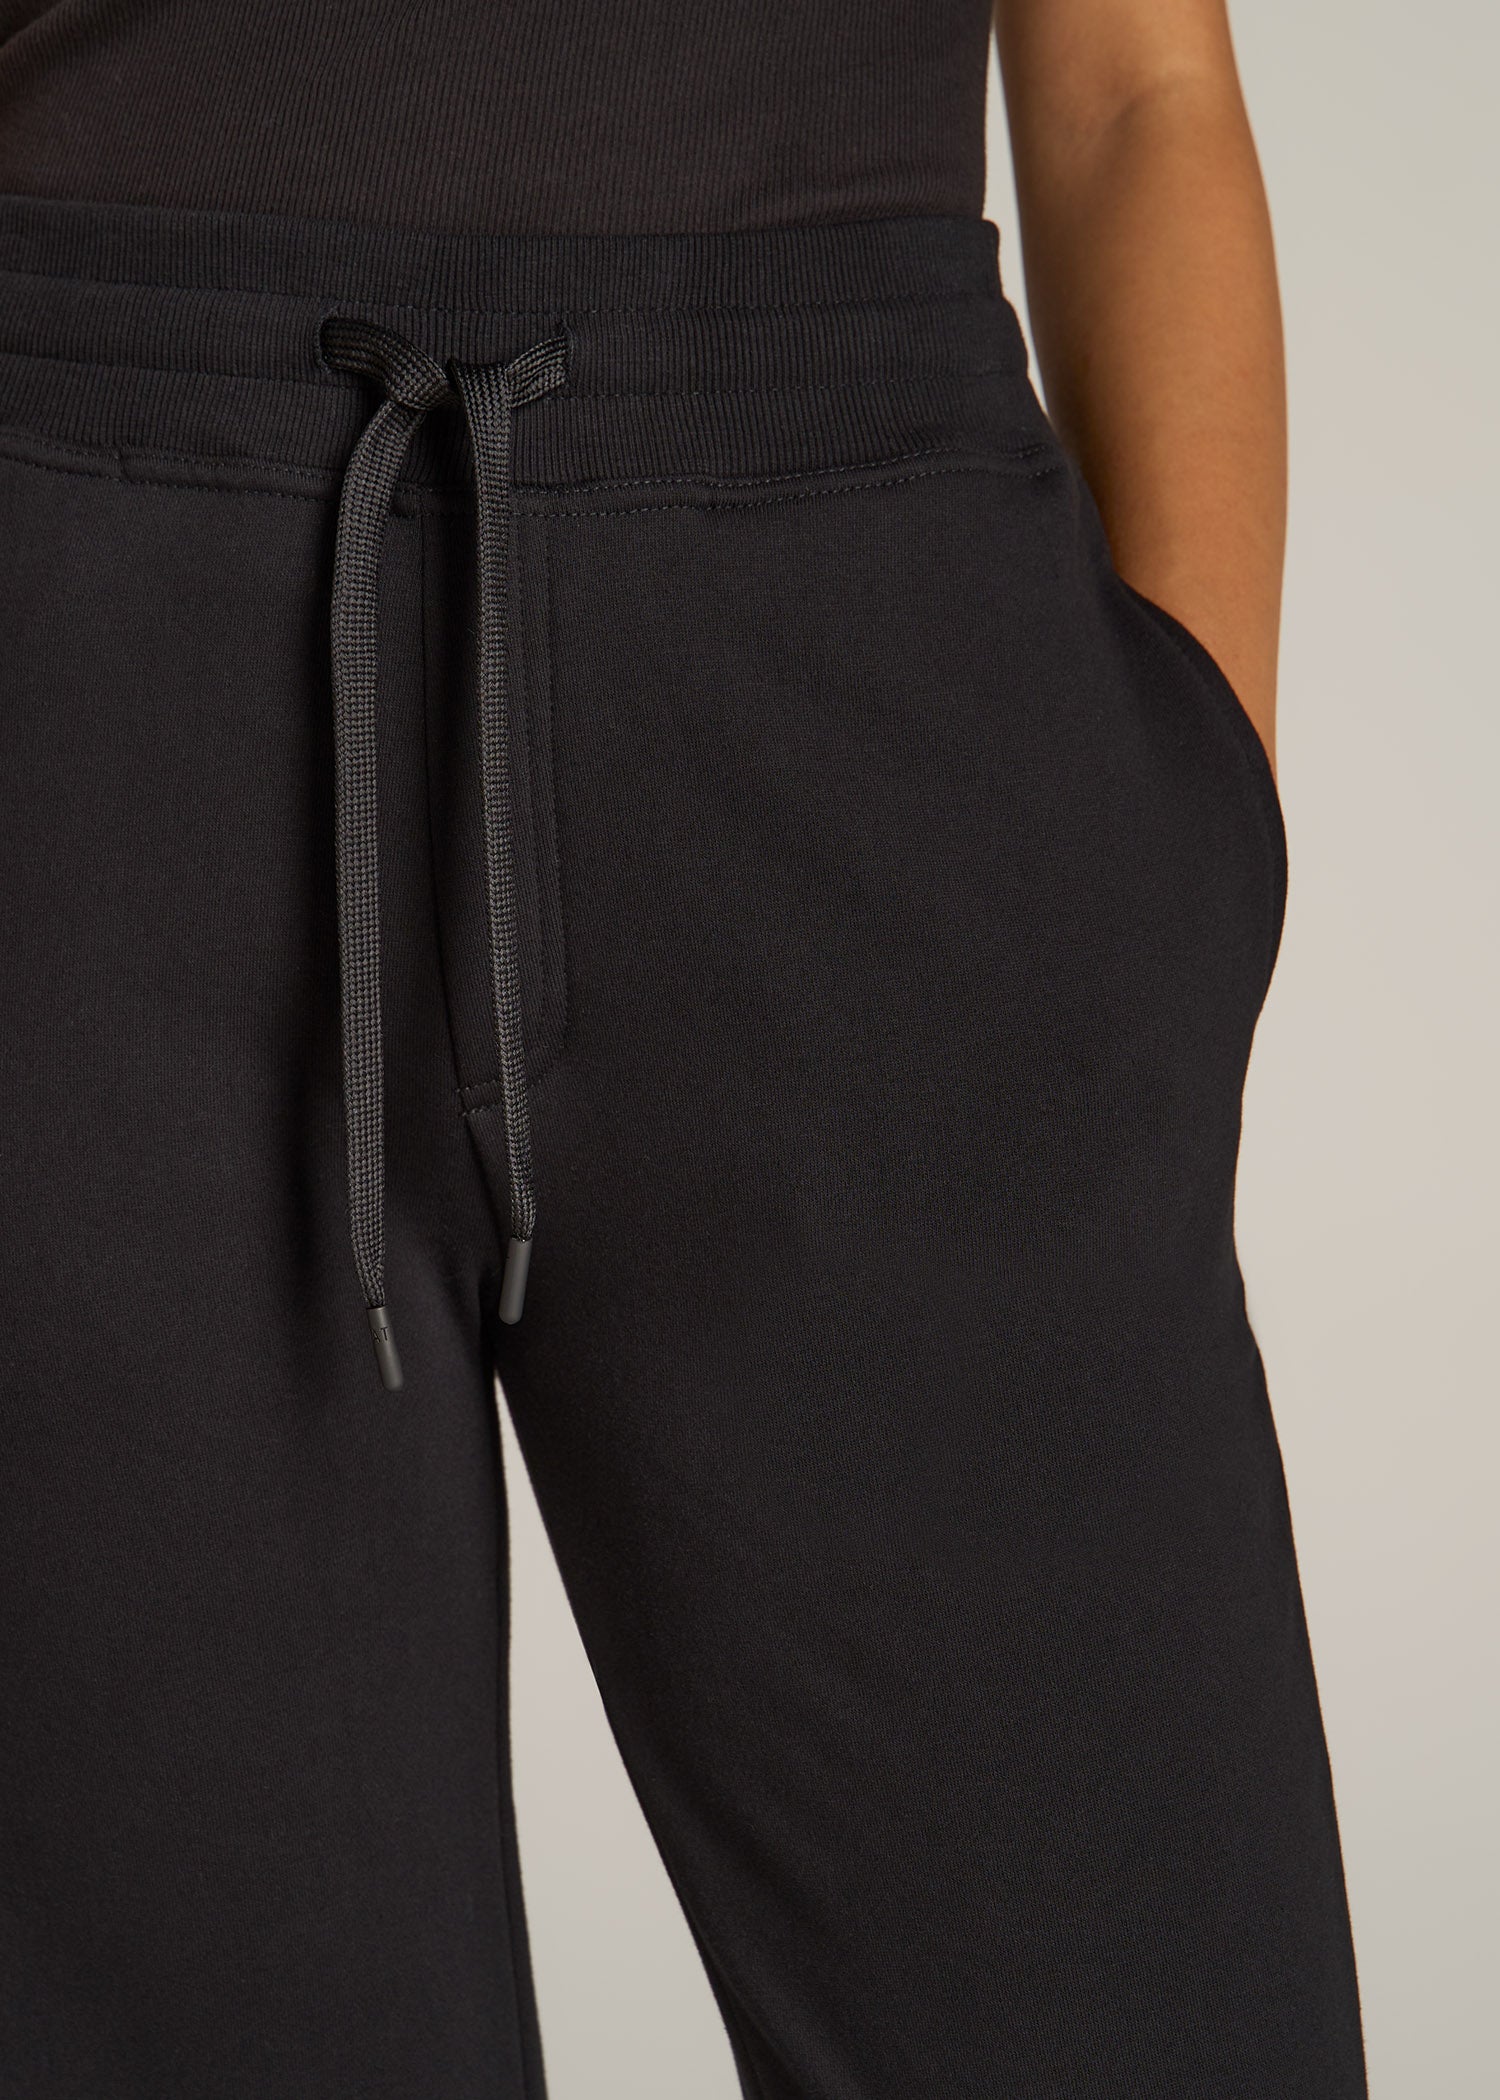 Tall Sweatpants for Women: Fleece Open Bottom Pants Black – American Tall